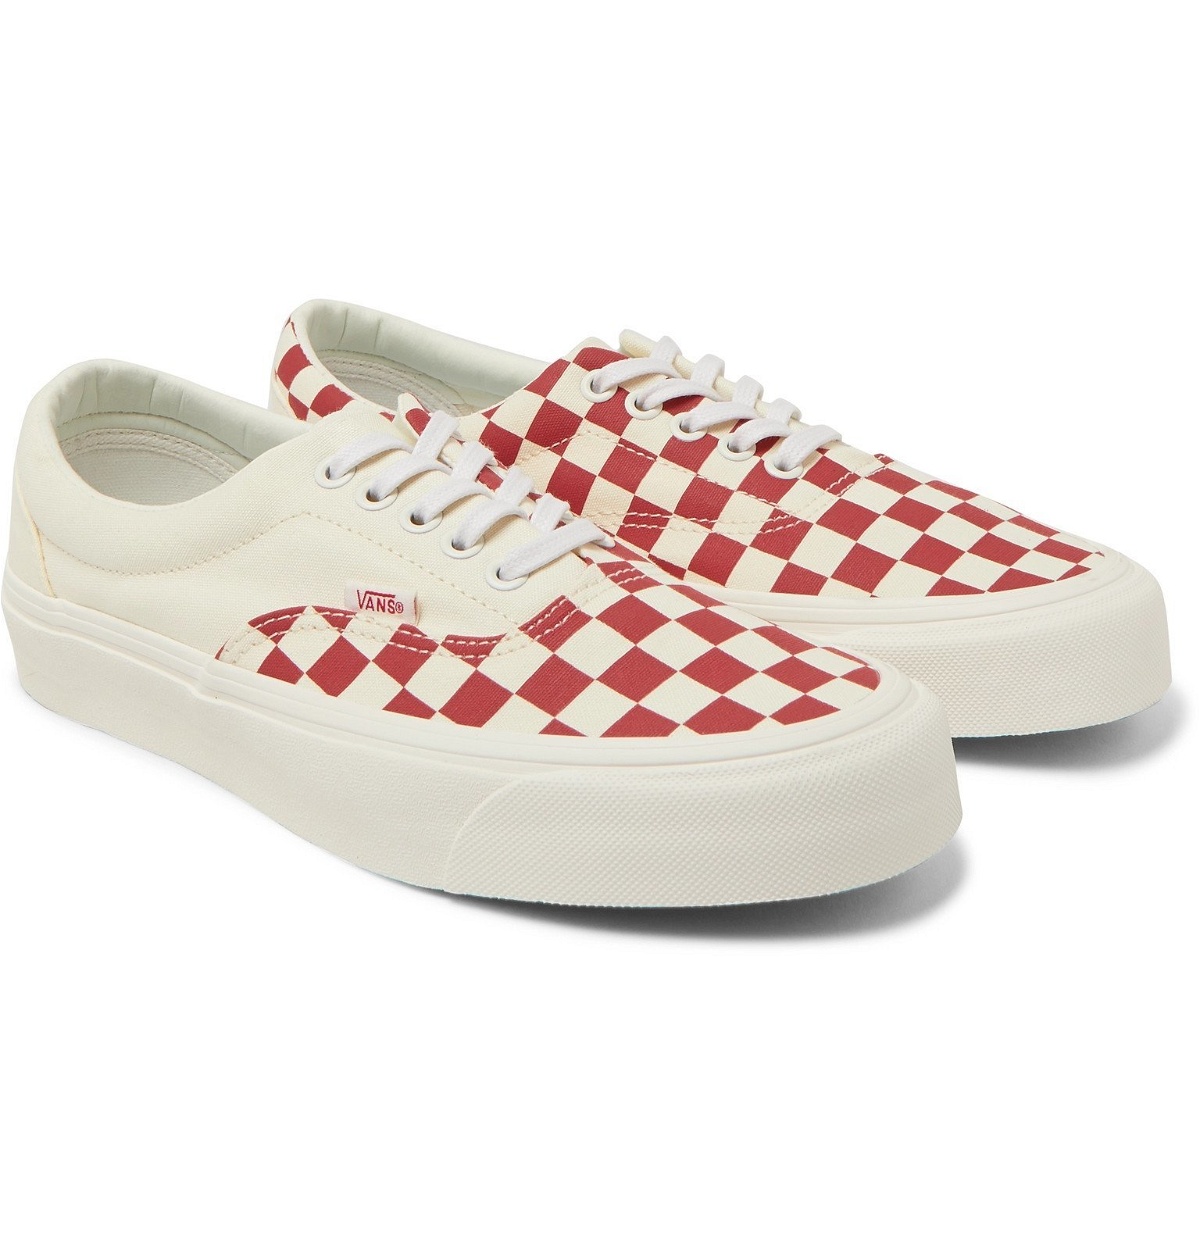 Vans - Checkerboard Canvas Sneakers - Red Vans